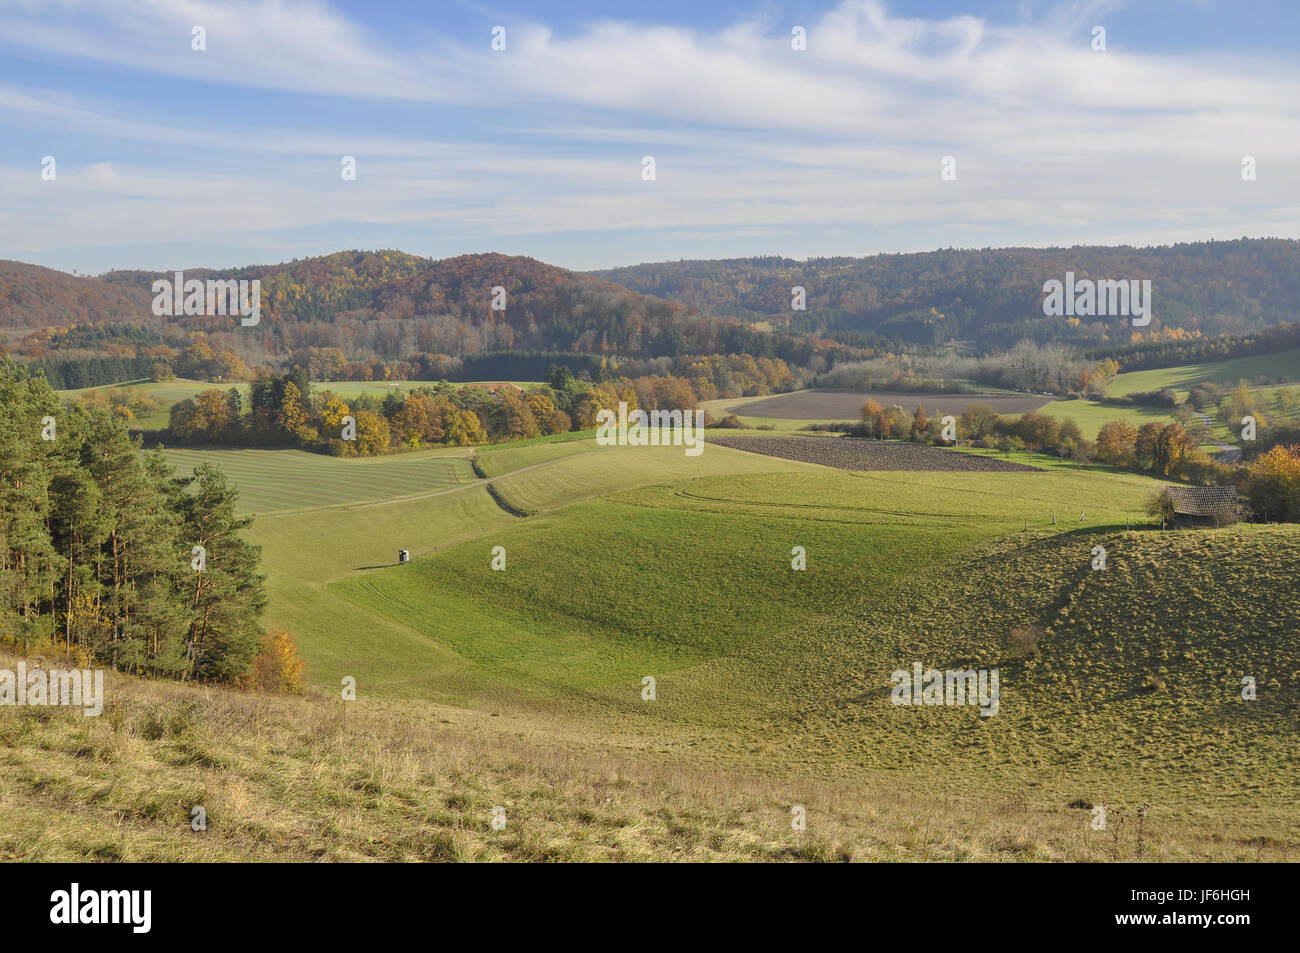 Hilly Landscape nearby Michelbach, Germany Stock Photo